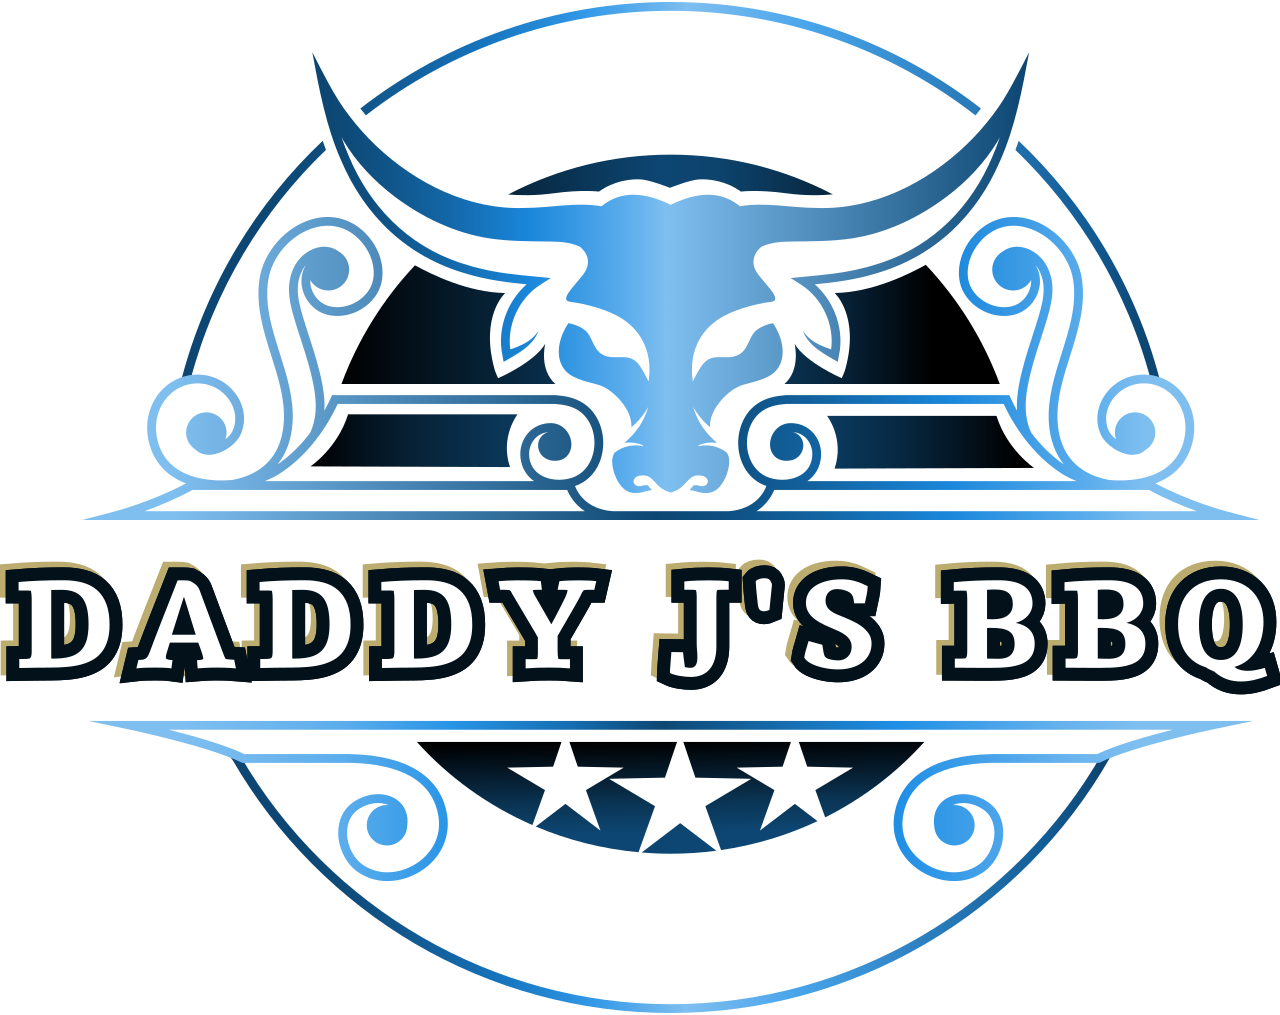 Daddy J's bbq 's logo